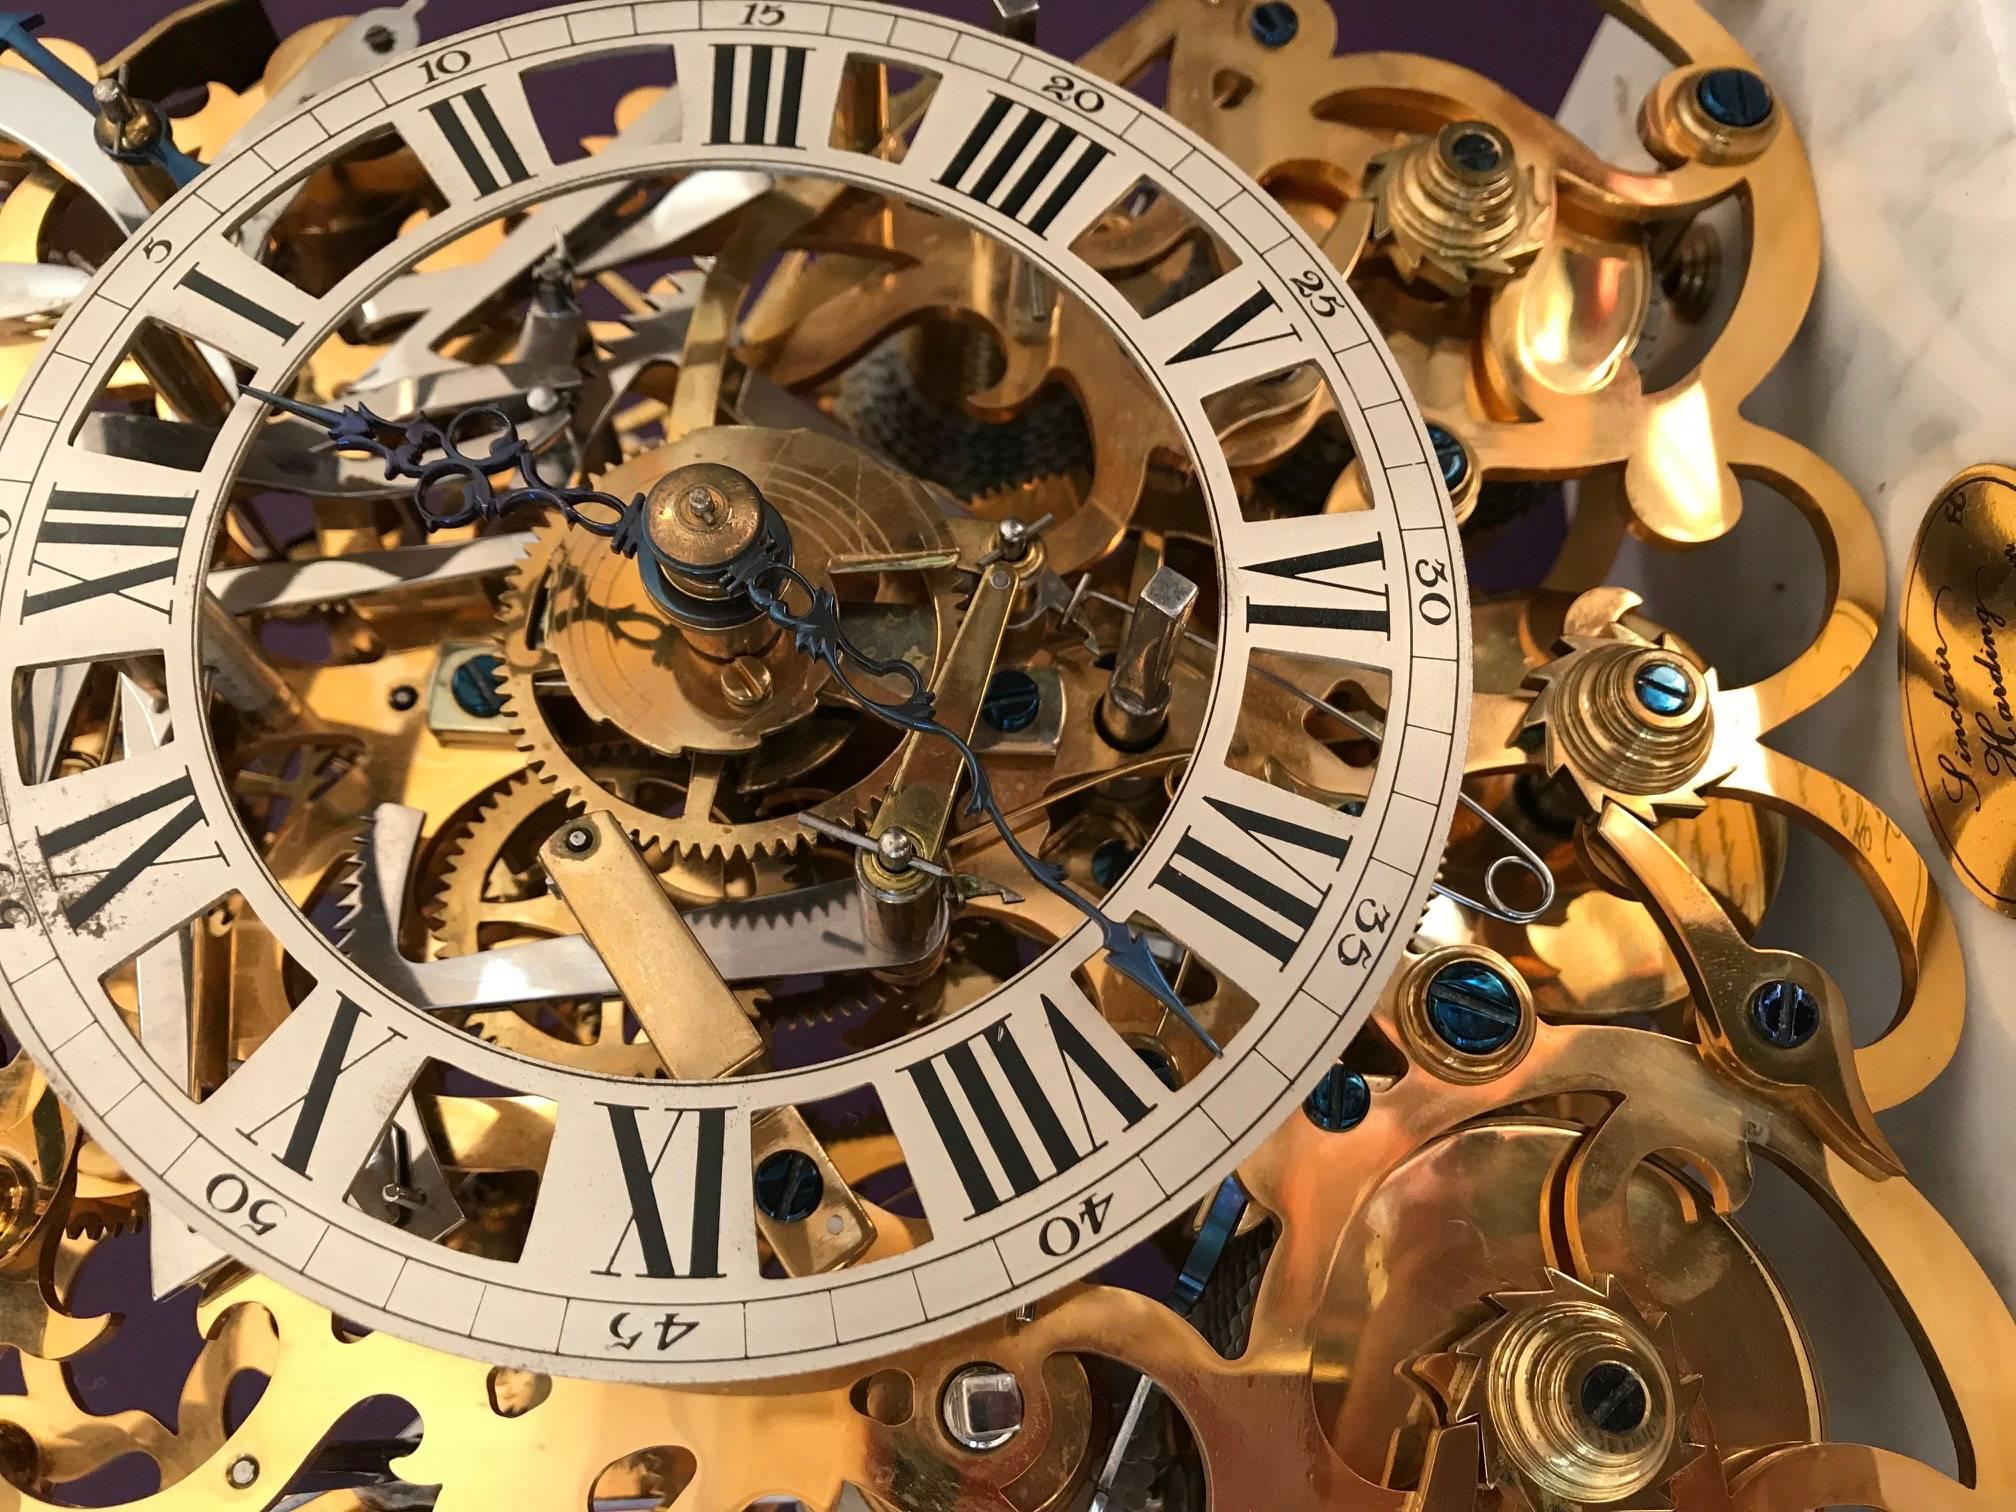 Cette magnifique horloge squelette à carillon est le résultat de mois de travail manuel minutieux. Chaque plaque est découpée individuellement dans du laiton massif, limée, tapissée de papier lisse, brunie et dorée avant d'être finalement intégrée à